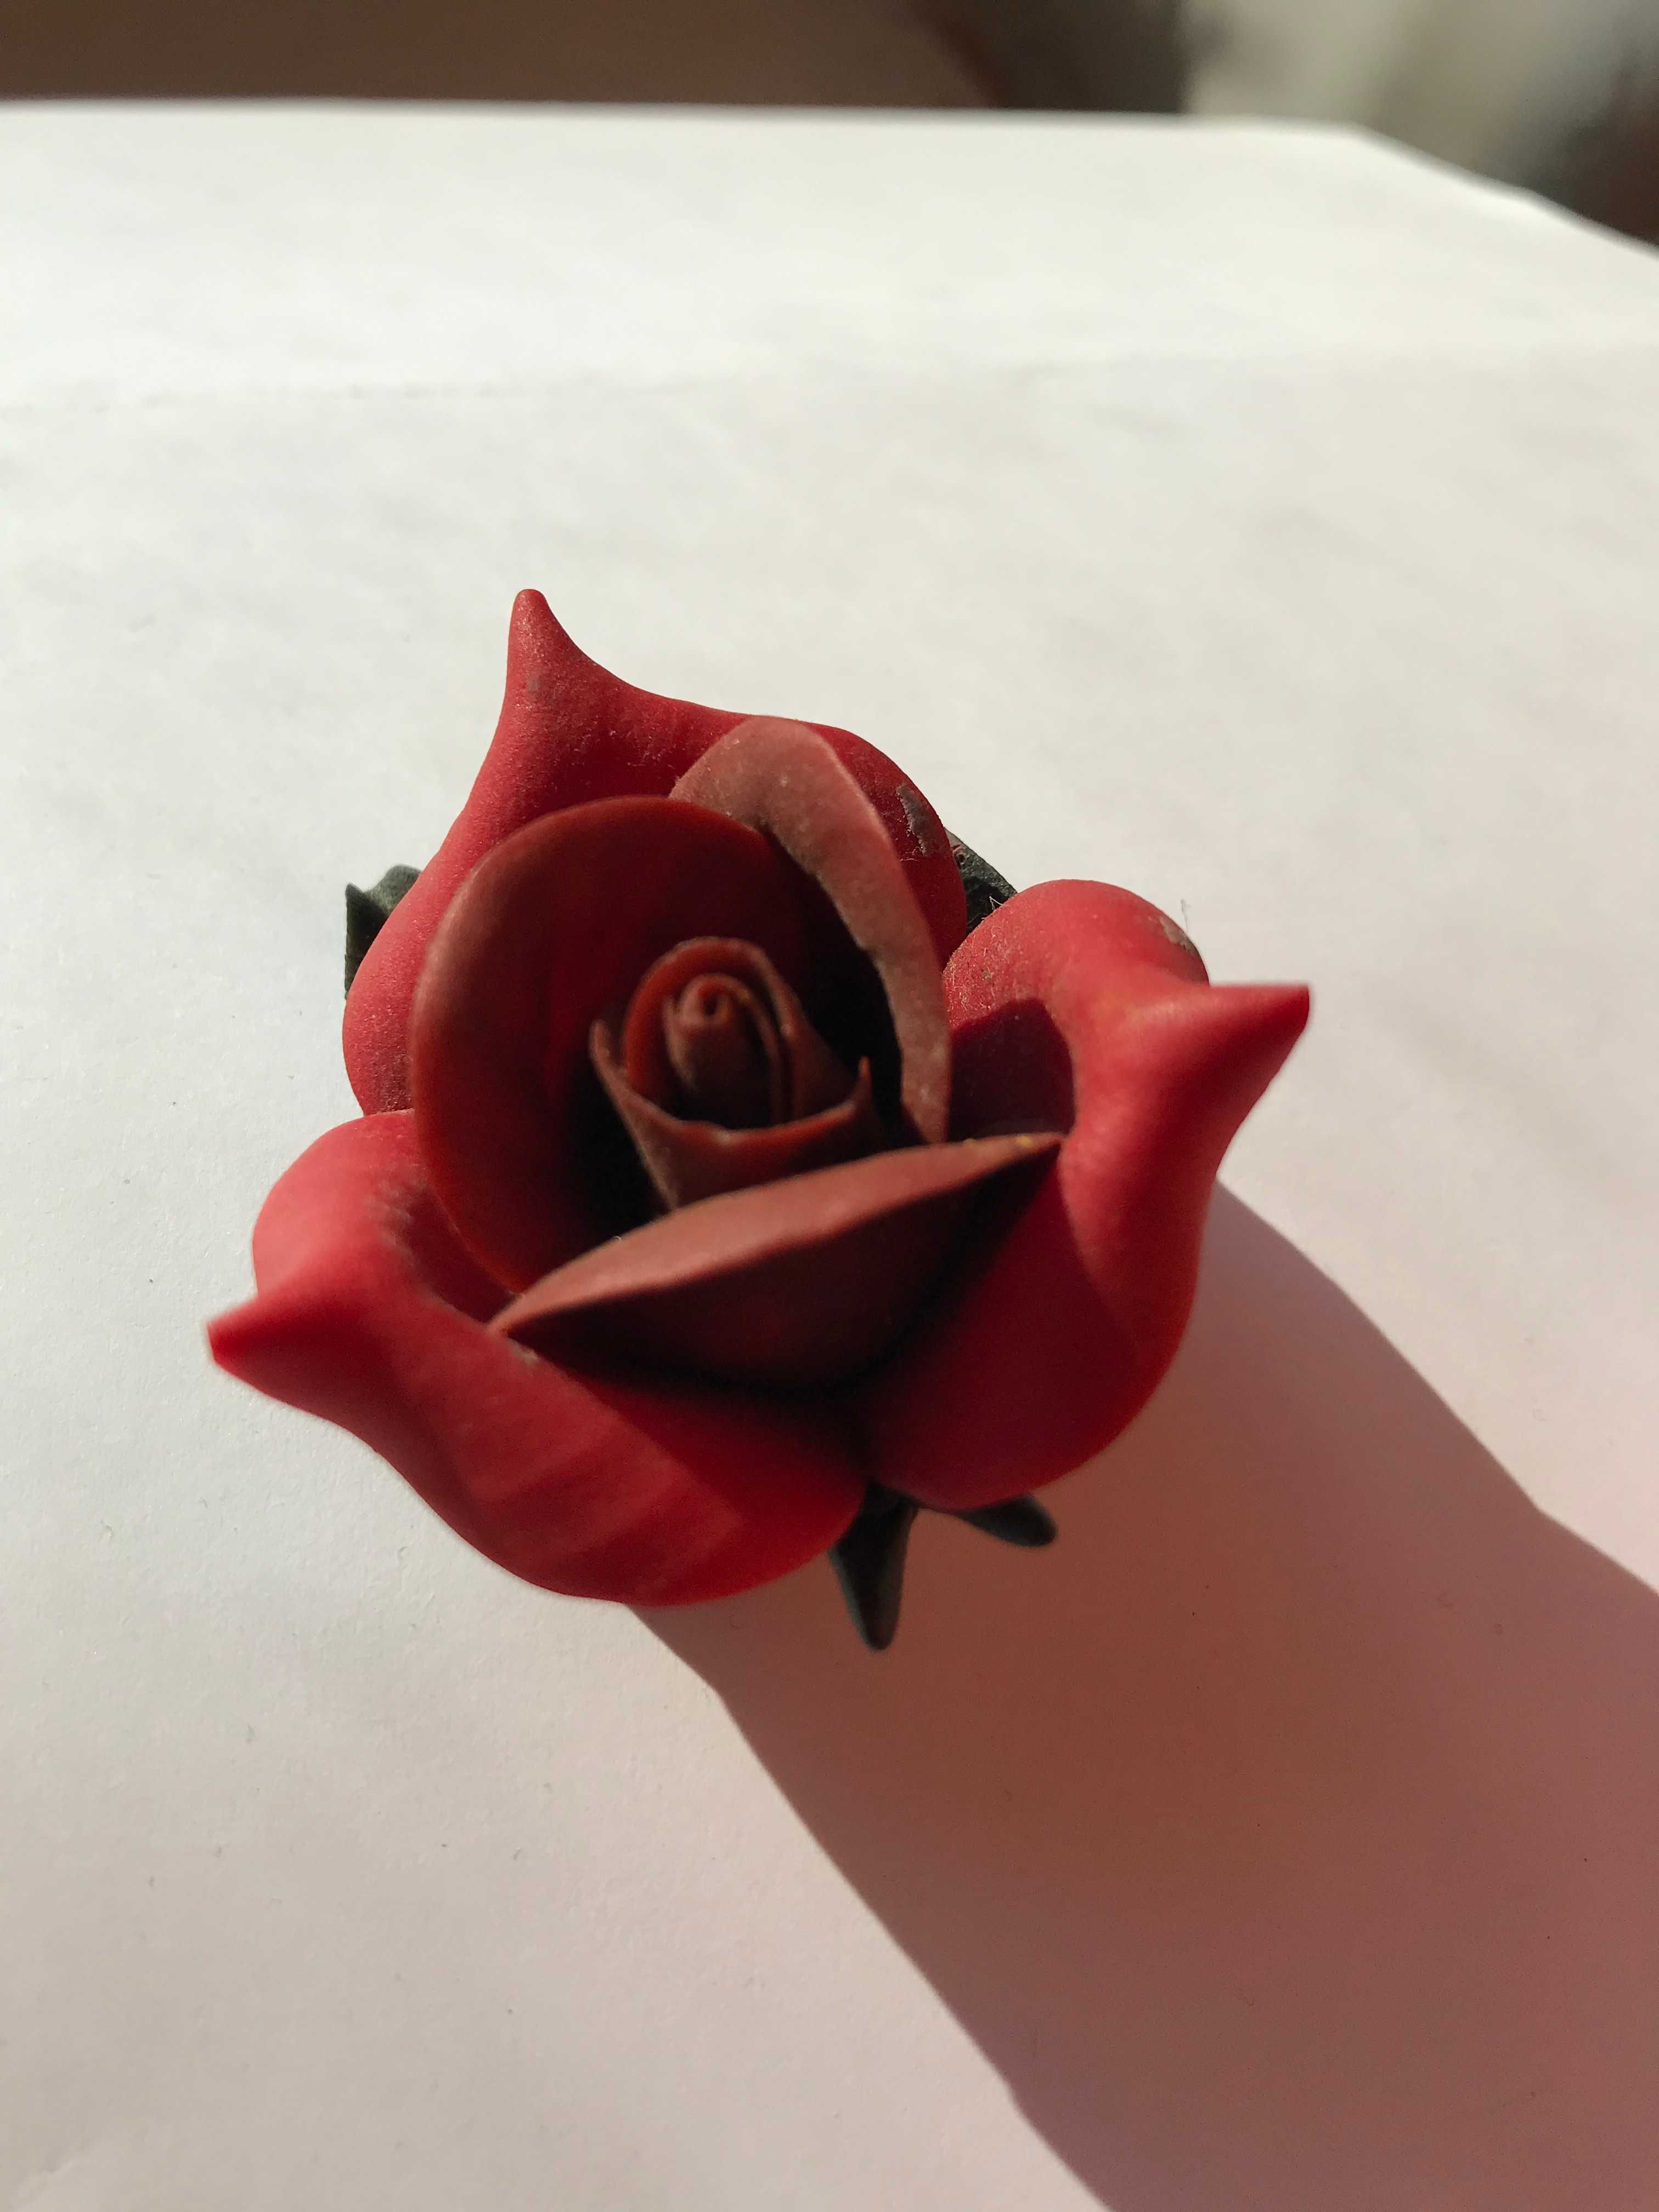 Stara broszka czerwona róża brosza handmade vintage retro boho